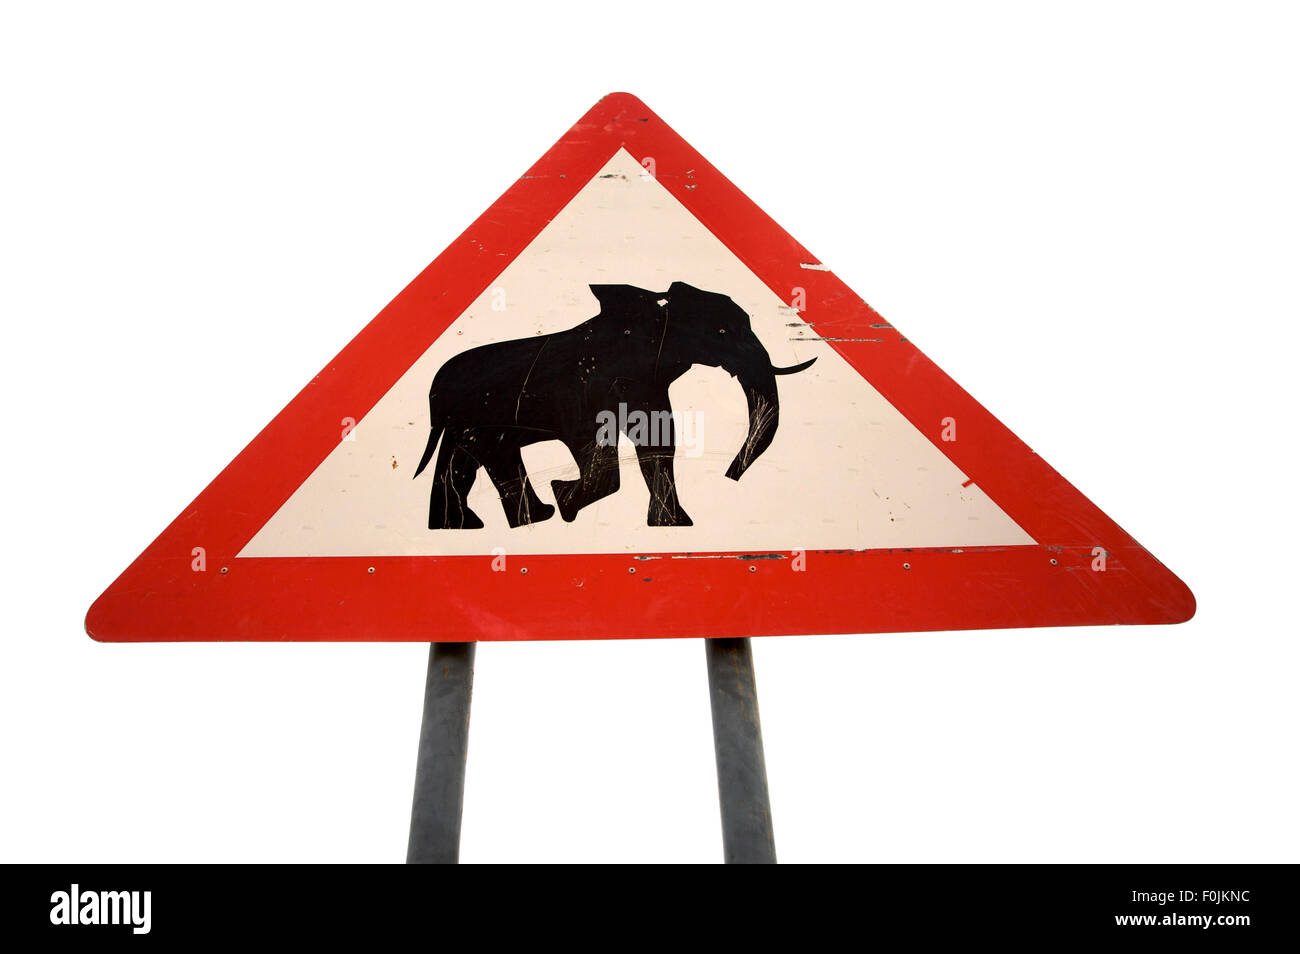 Verkehrszeichen Achtung der Anwesenheit von wilden Elefanten in der Region isoliert auf weißem Hintergrund. Namibia Stockfoto